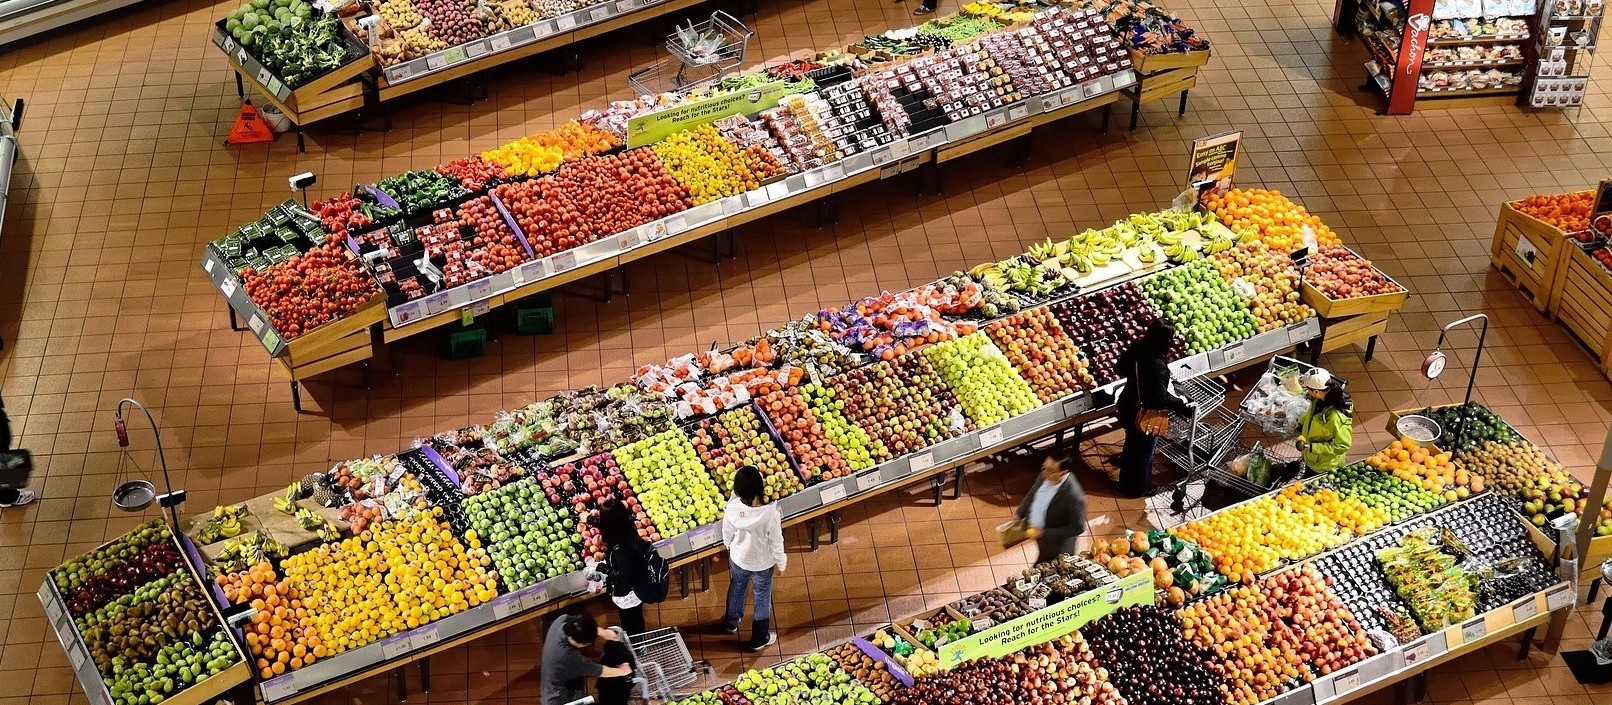 Crise e oportunidades nas redes de supermercados